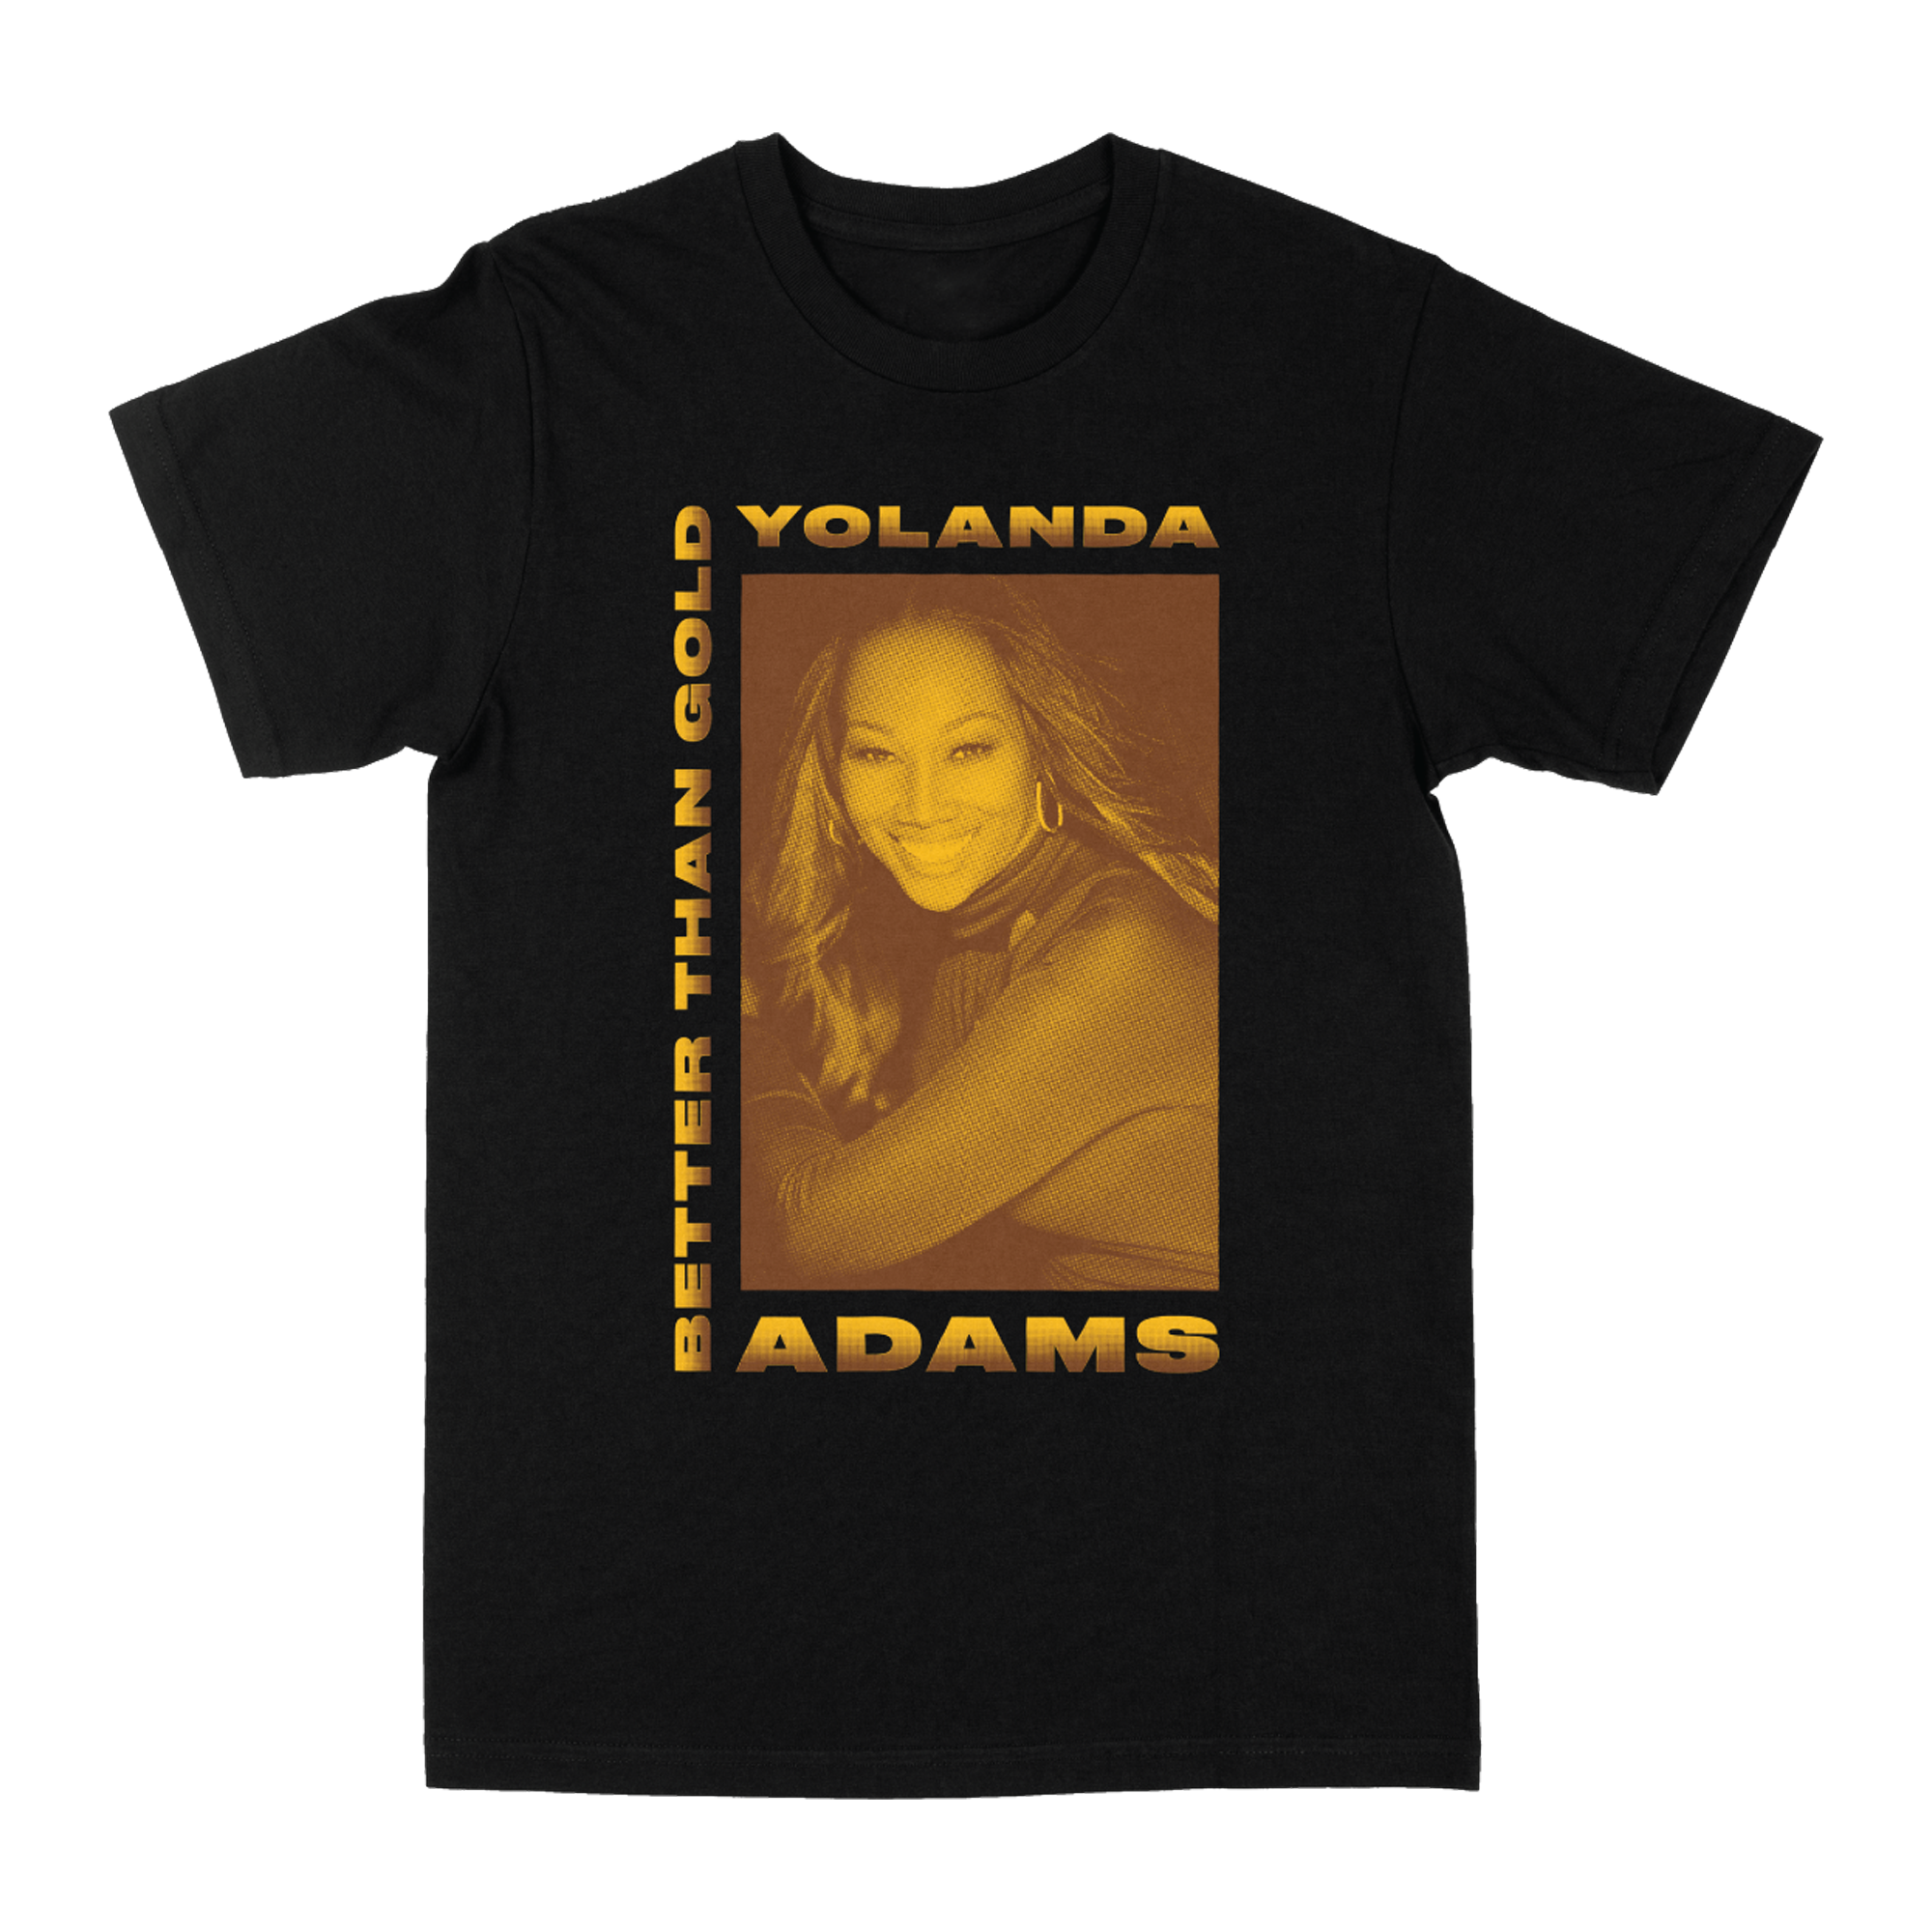 Yolanda Adams - Better Than Gold Shirt